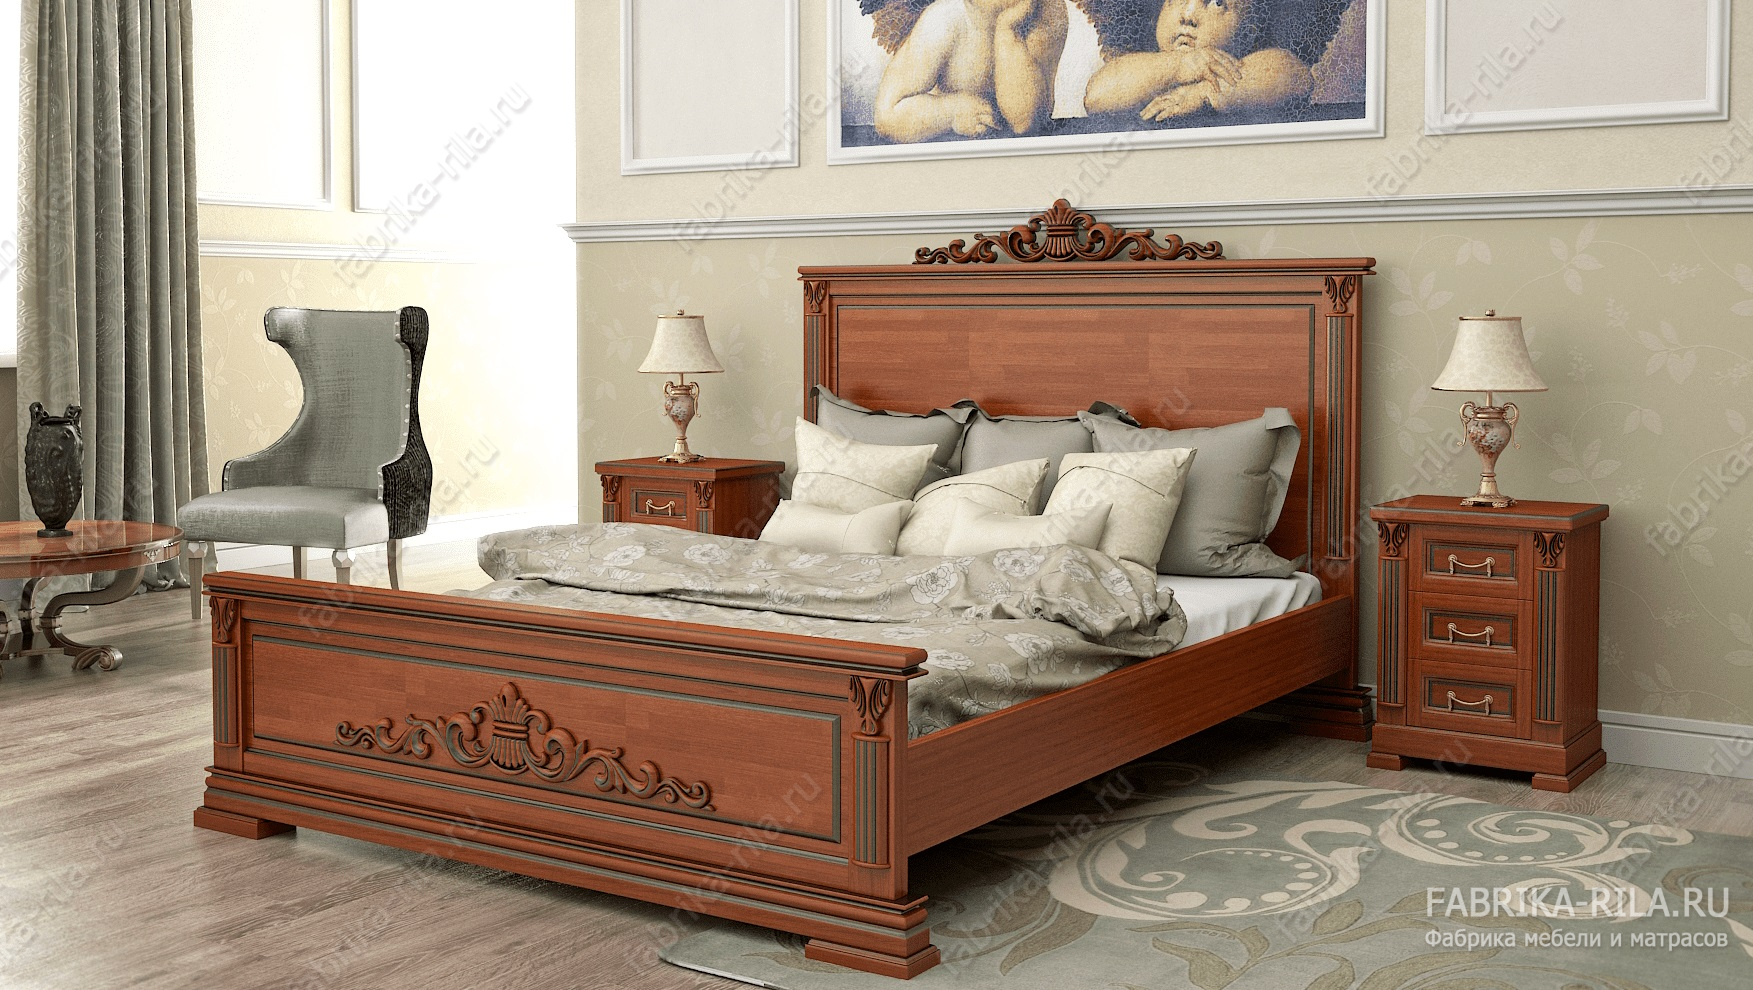 Кровать Viktori 1 — 180x200 см. из сосны